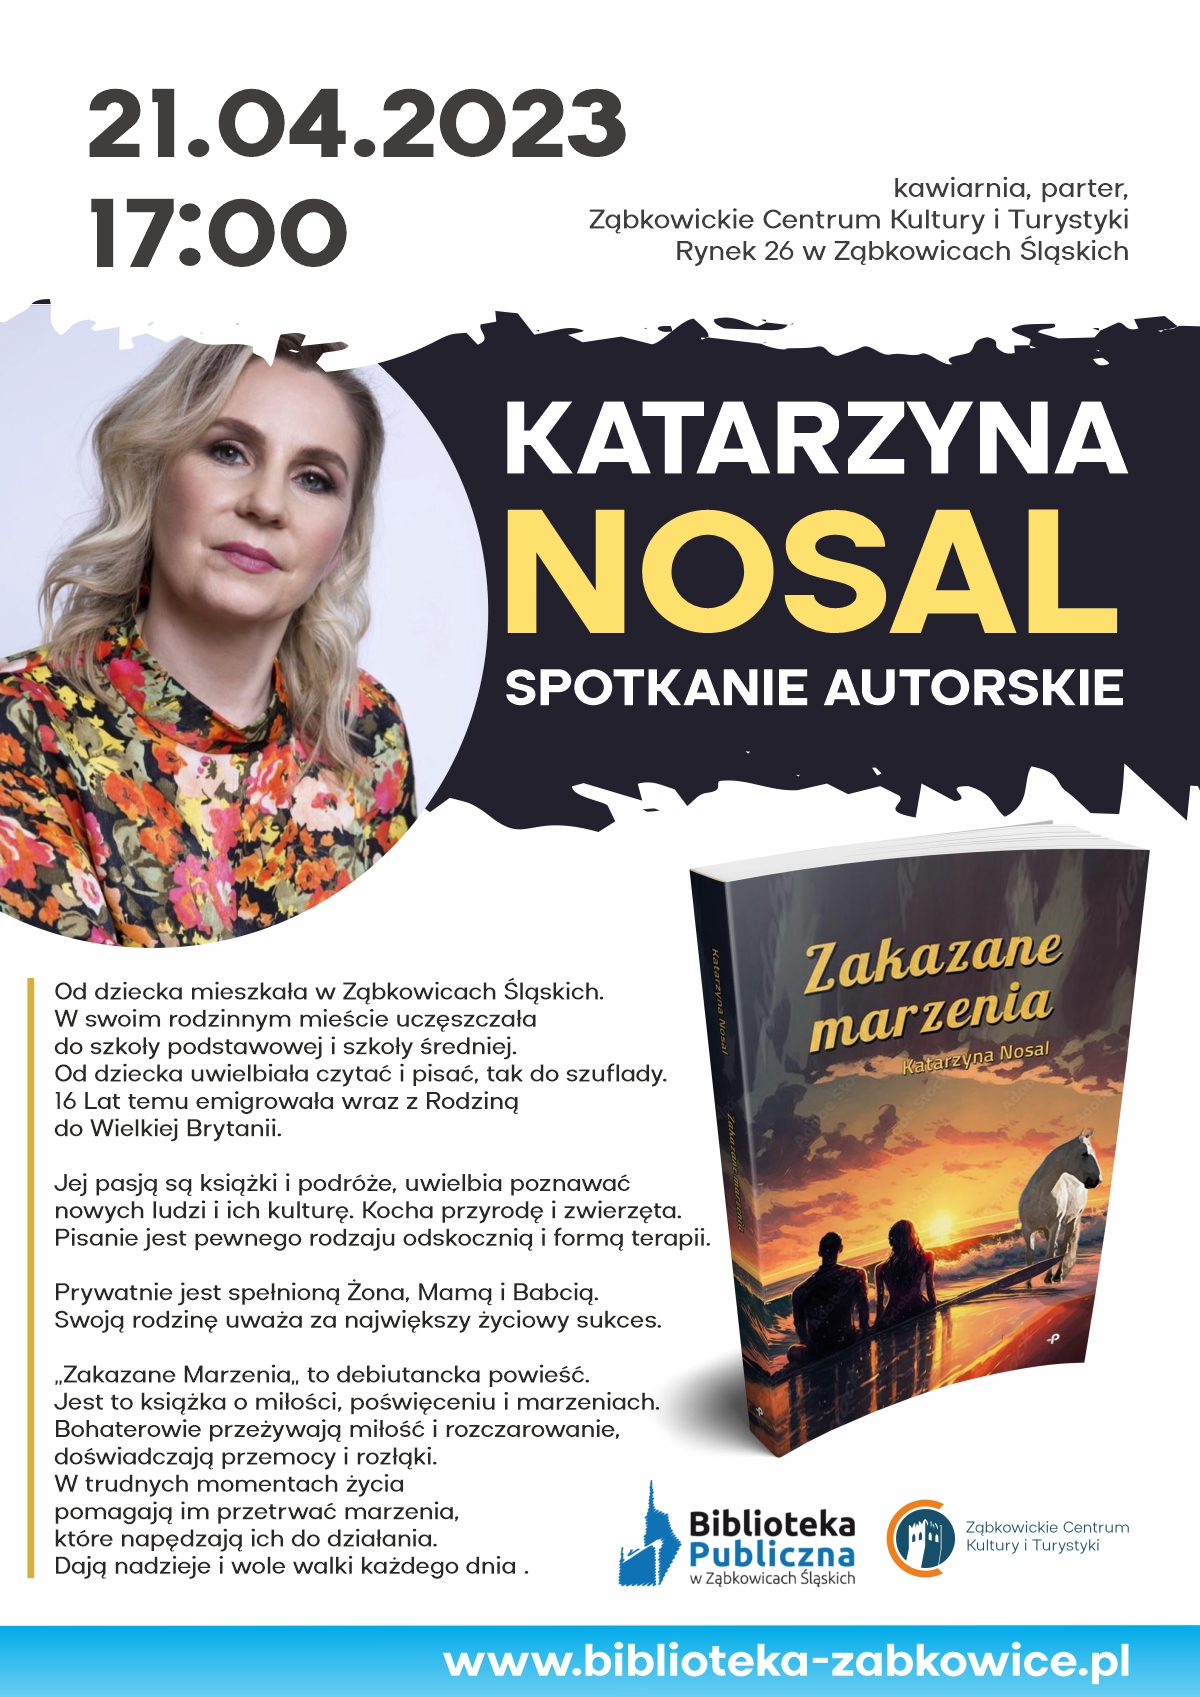 Plakat informacyjny o spotkaniu z Katarzyną Nosal 21 kwietnia 2023 o godzinie 17:00 w kawiarni Ząbkowickiego Centrum Kultury i Turystyki.